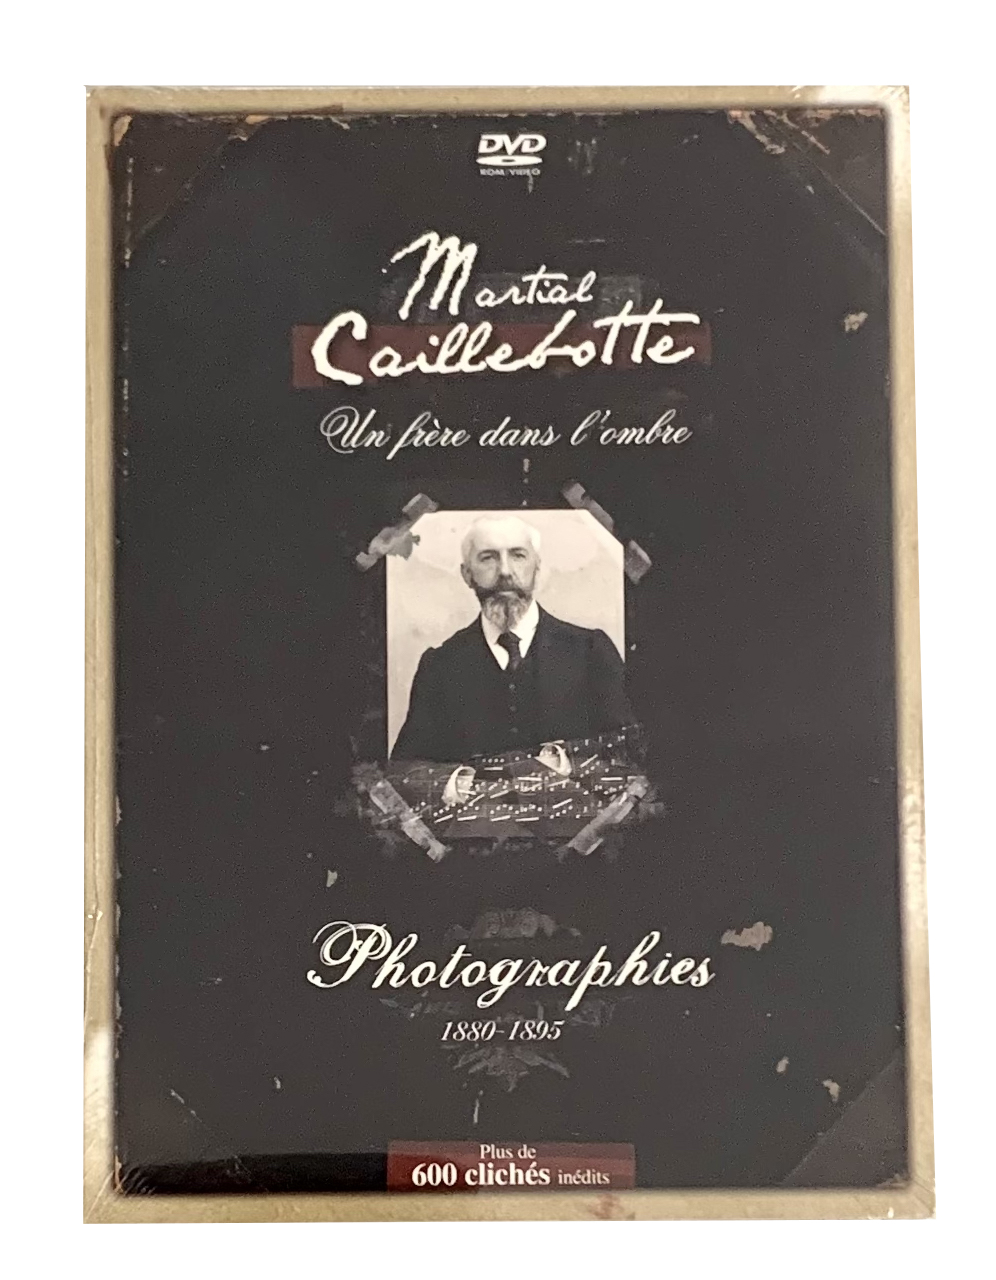  DVD Martial Caillebotte, un frère dans l'ombre (1880 - 1895) - Photographies 